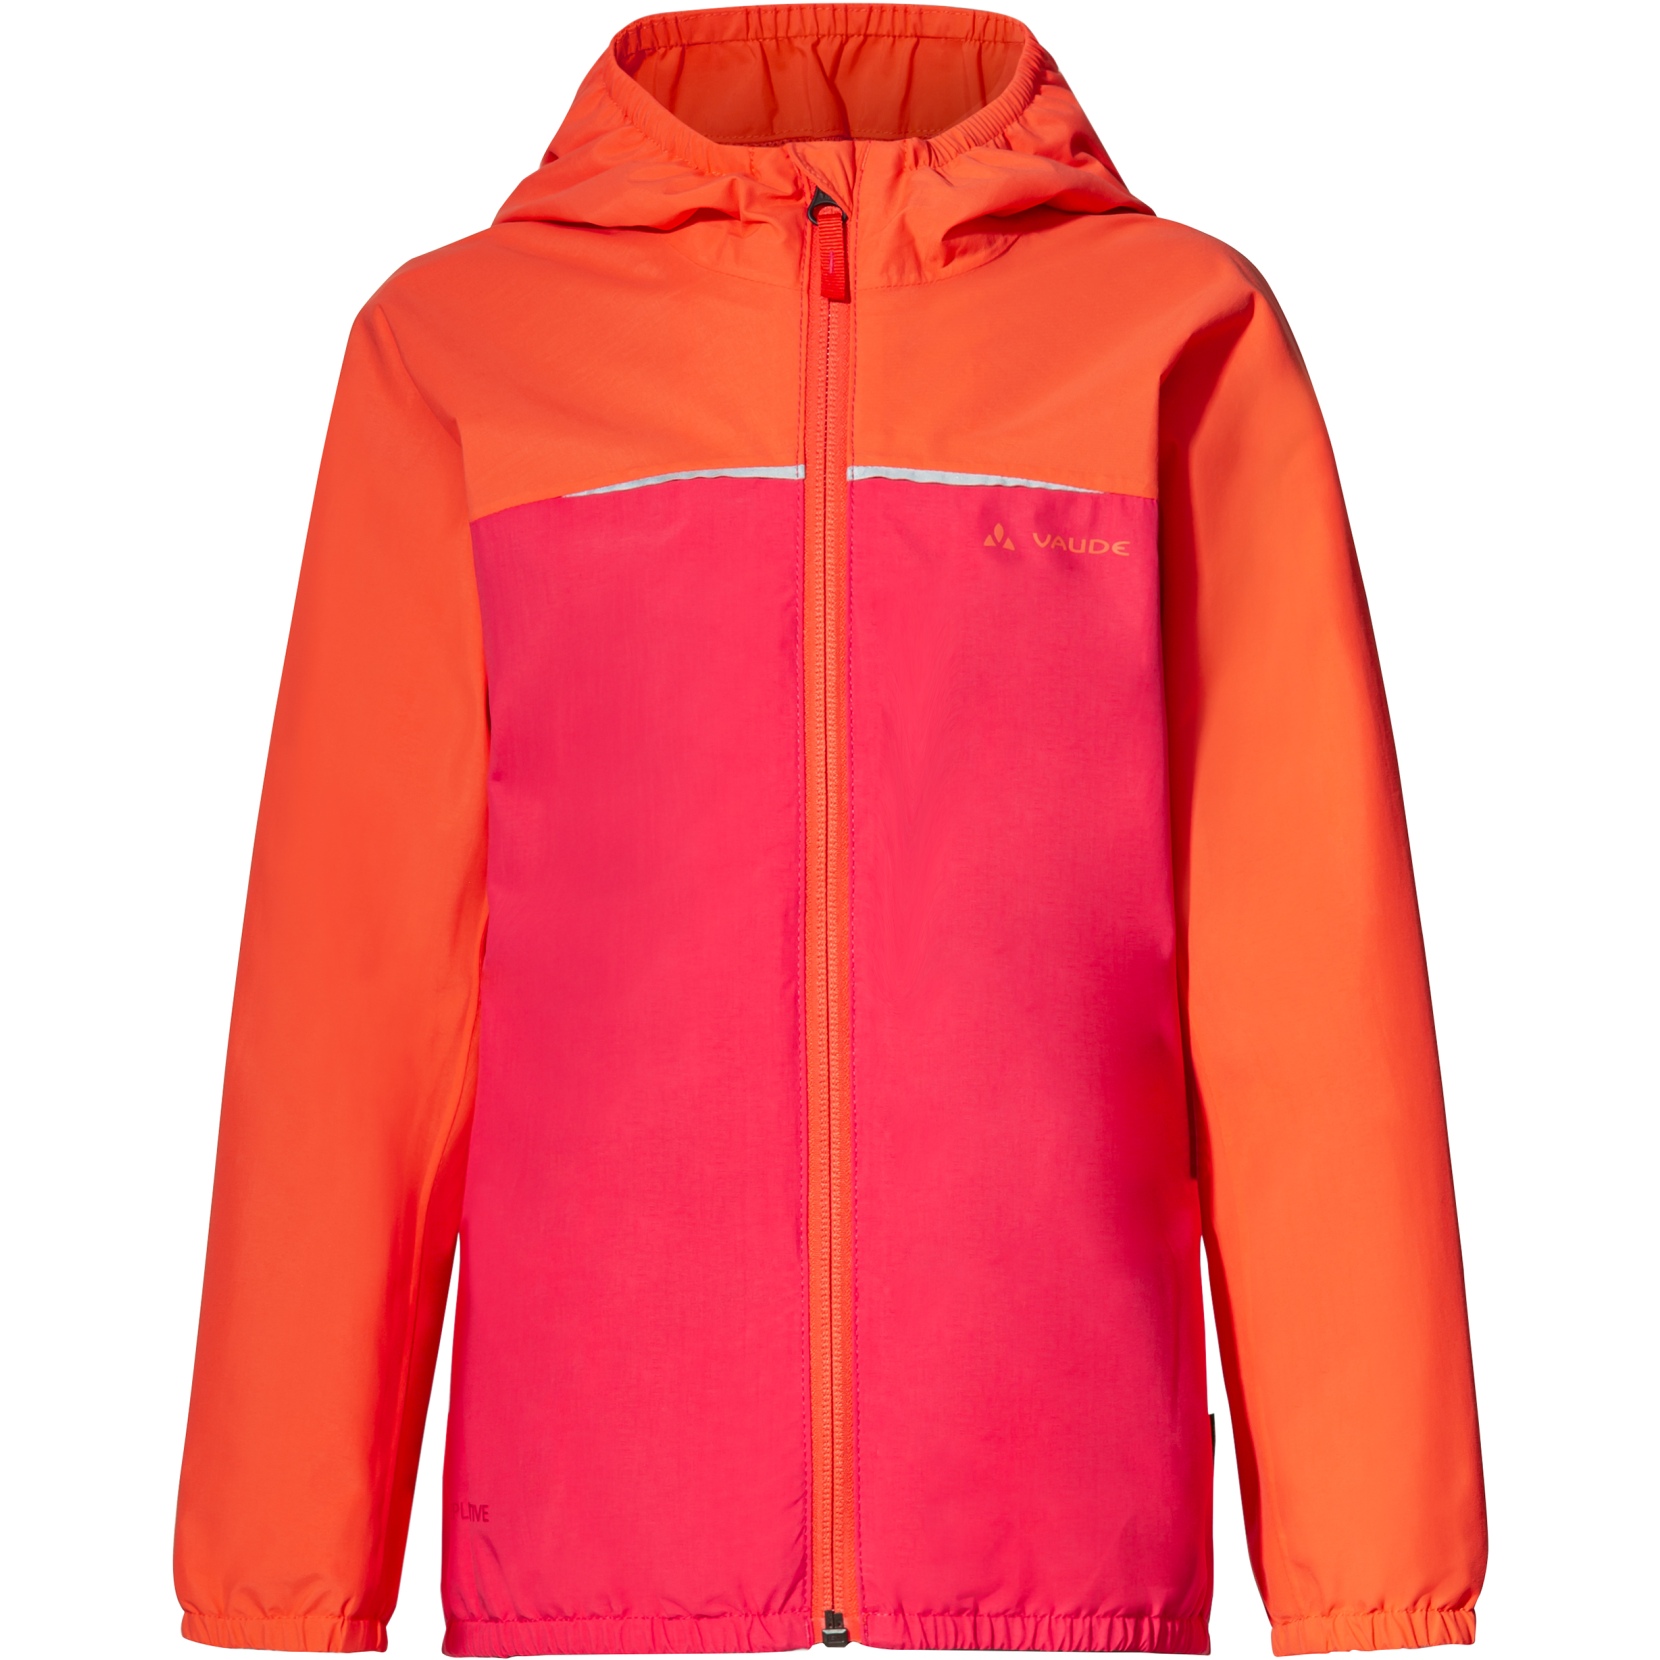 Produktbild von Vaude Turaco II Jacke Kinder - bright pink/orange